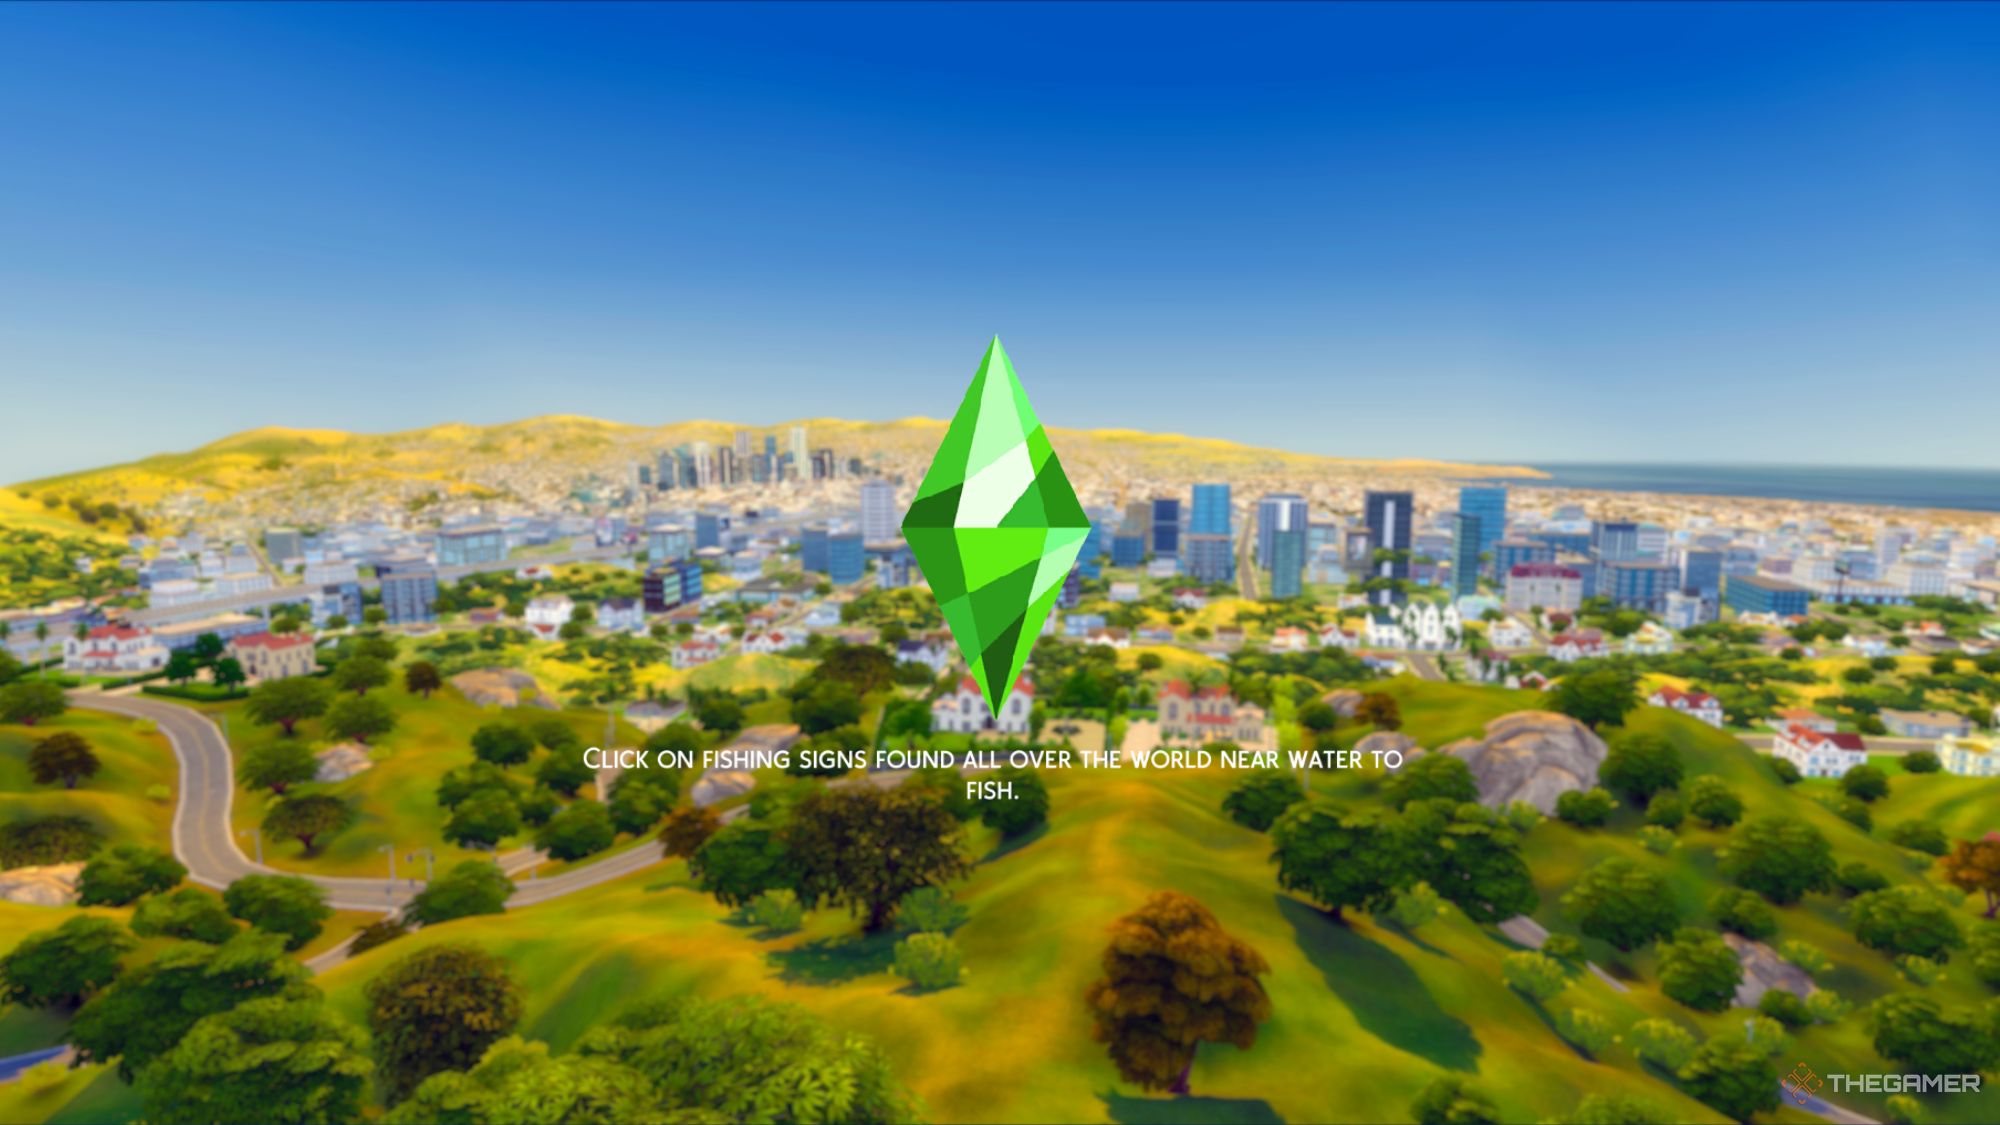 Лучшие моды пользовательского интерфейса в The Sims 4